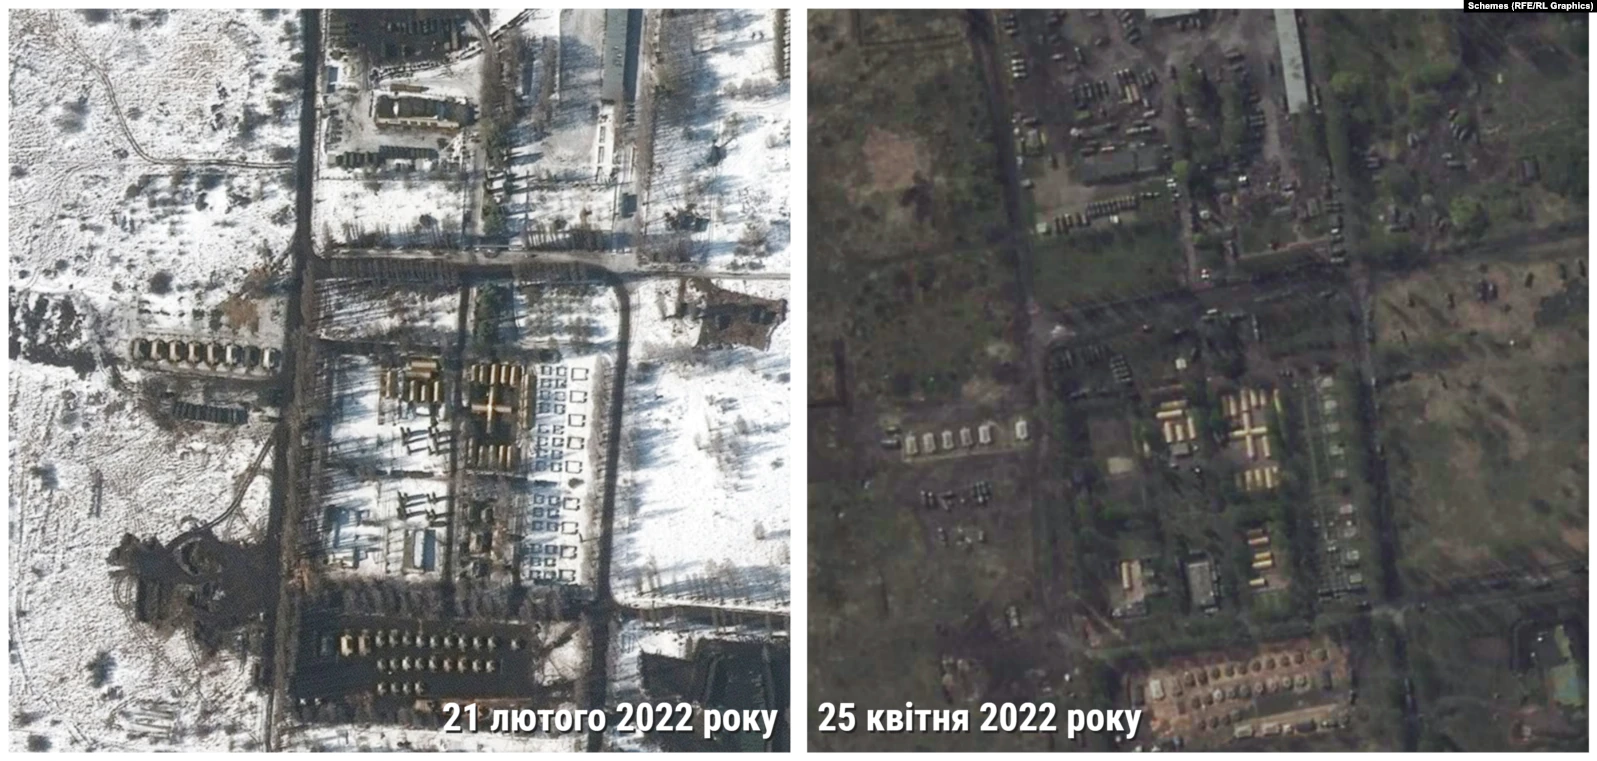 Сравнение на снимках Maxar за 21 февраля и Planet за 25 апреля 2022: увеличение количества военной техники РФ в Белгороде. Коллаж: "Радио Свобода"